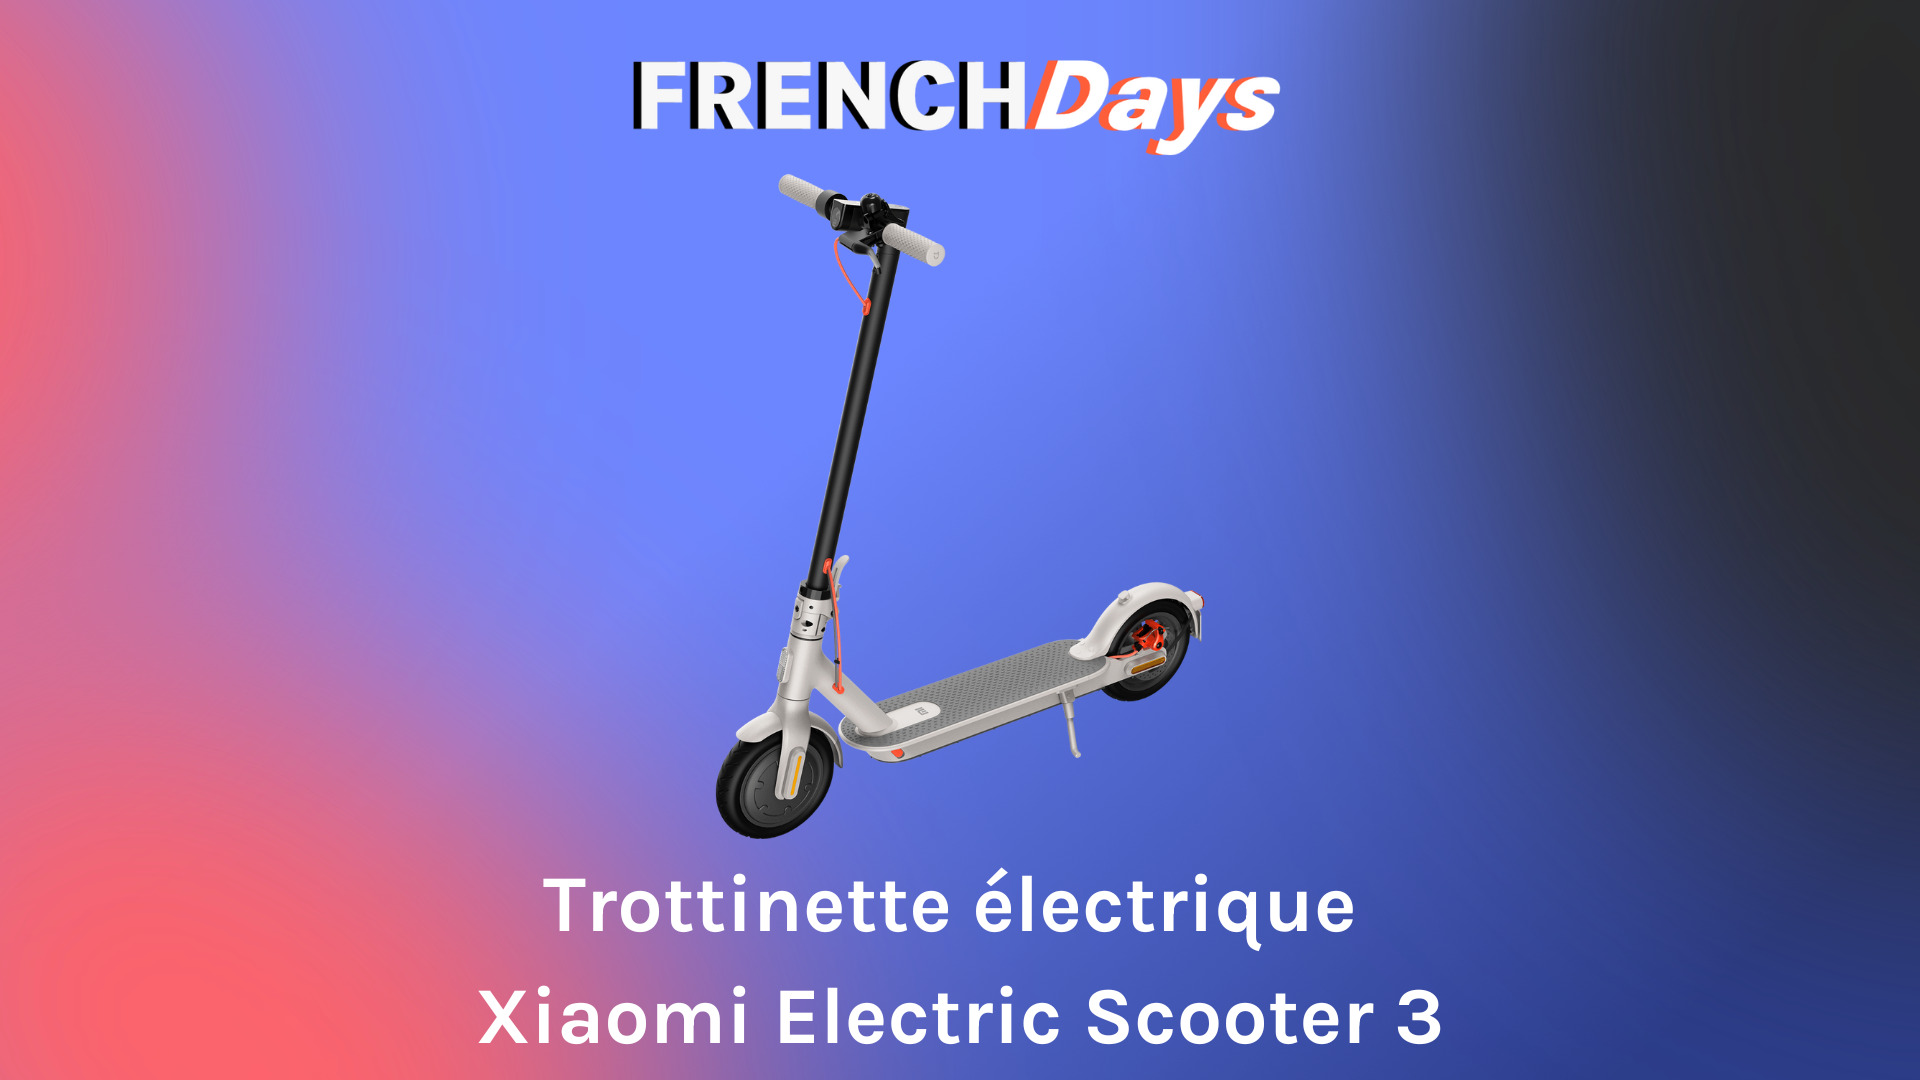 La trottinette Scooter 3 de Xiaomi est plus intéressante pour les French  Days - Numerama